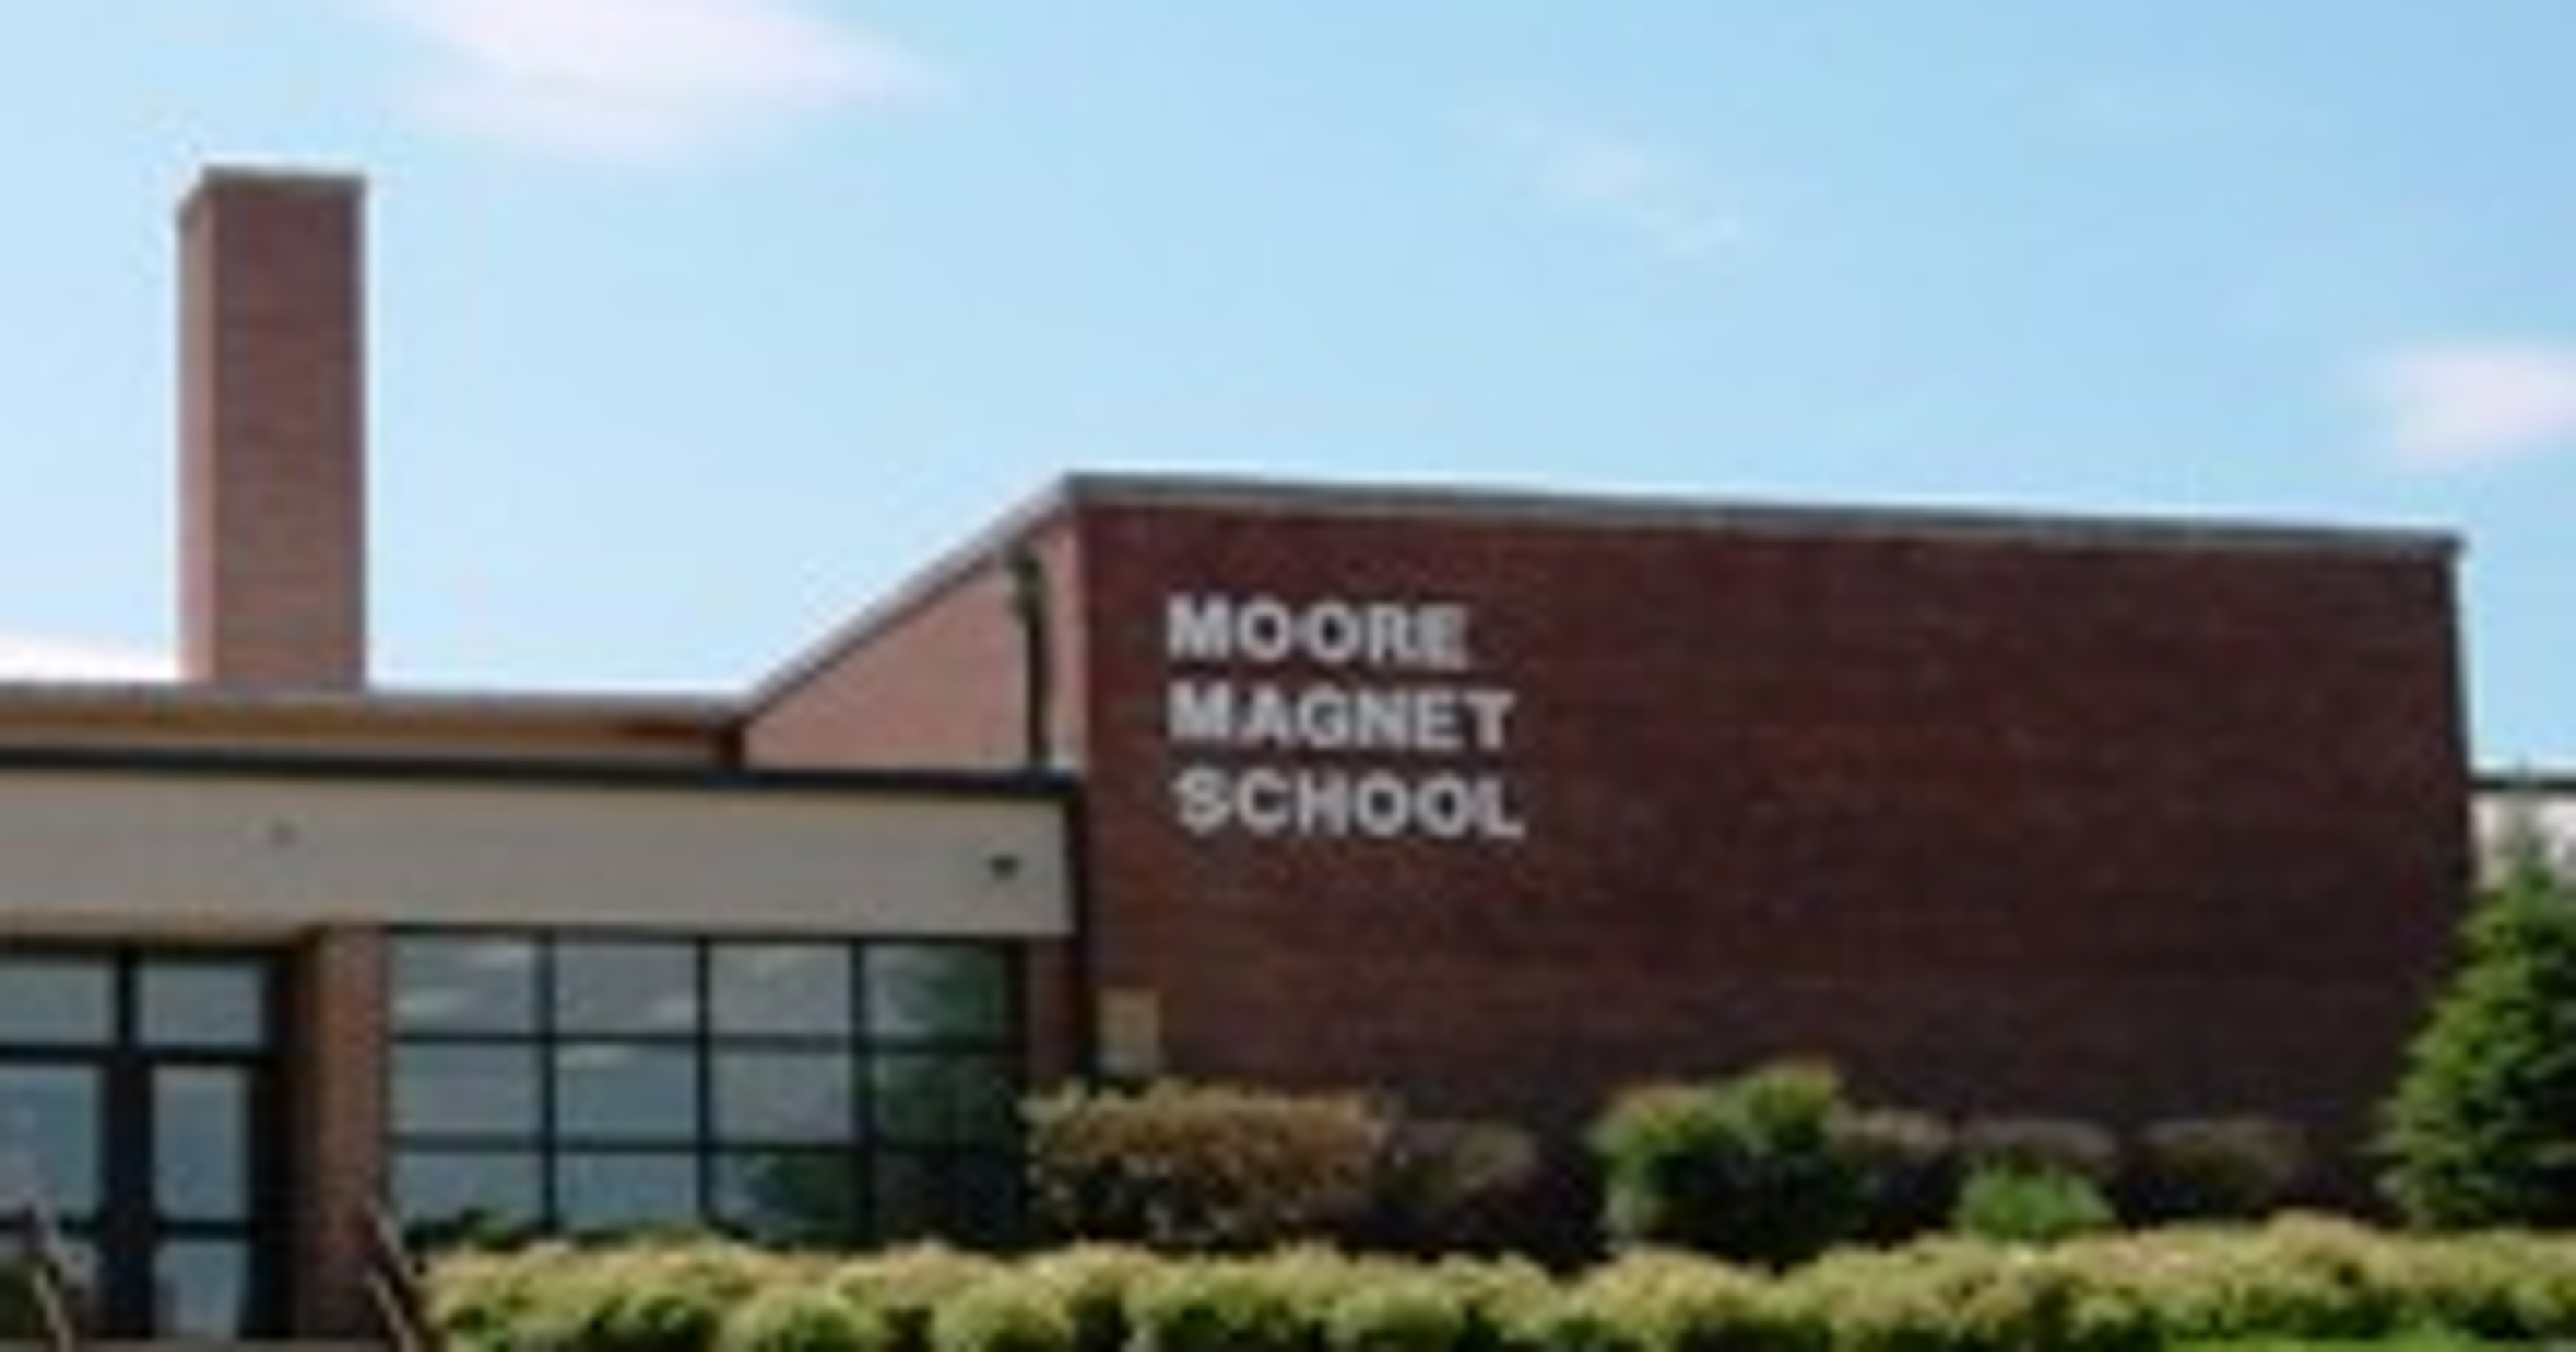 Moore Elementary School assistant principal dies